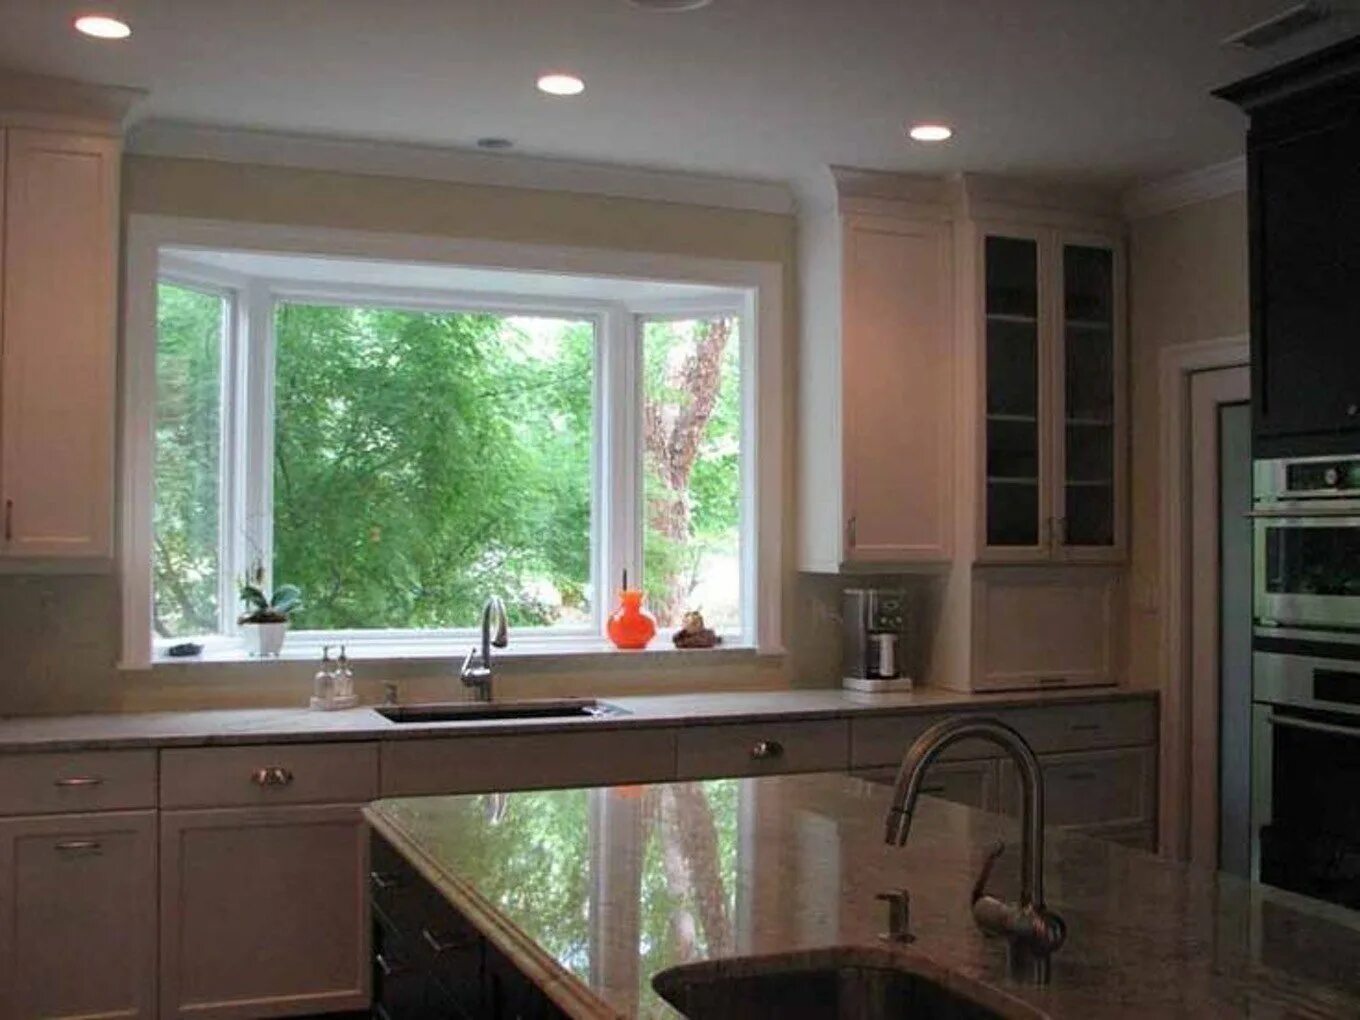 Кухни примыкающие к окну. Кухня возле окна. Раковина возле окна на кухне. Кухонный гарнитур с окном. Кухня с окном в частном доме.